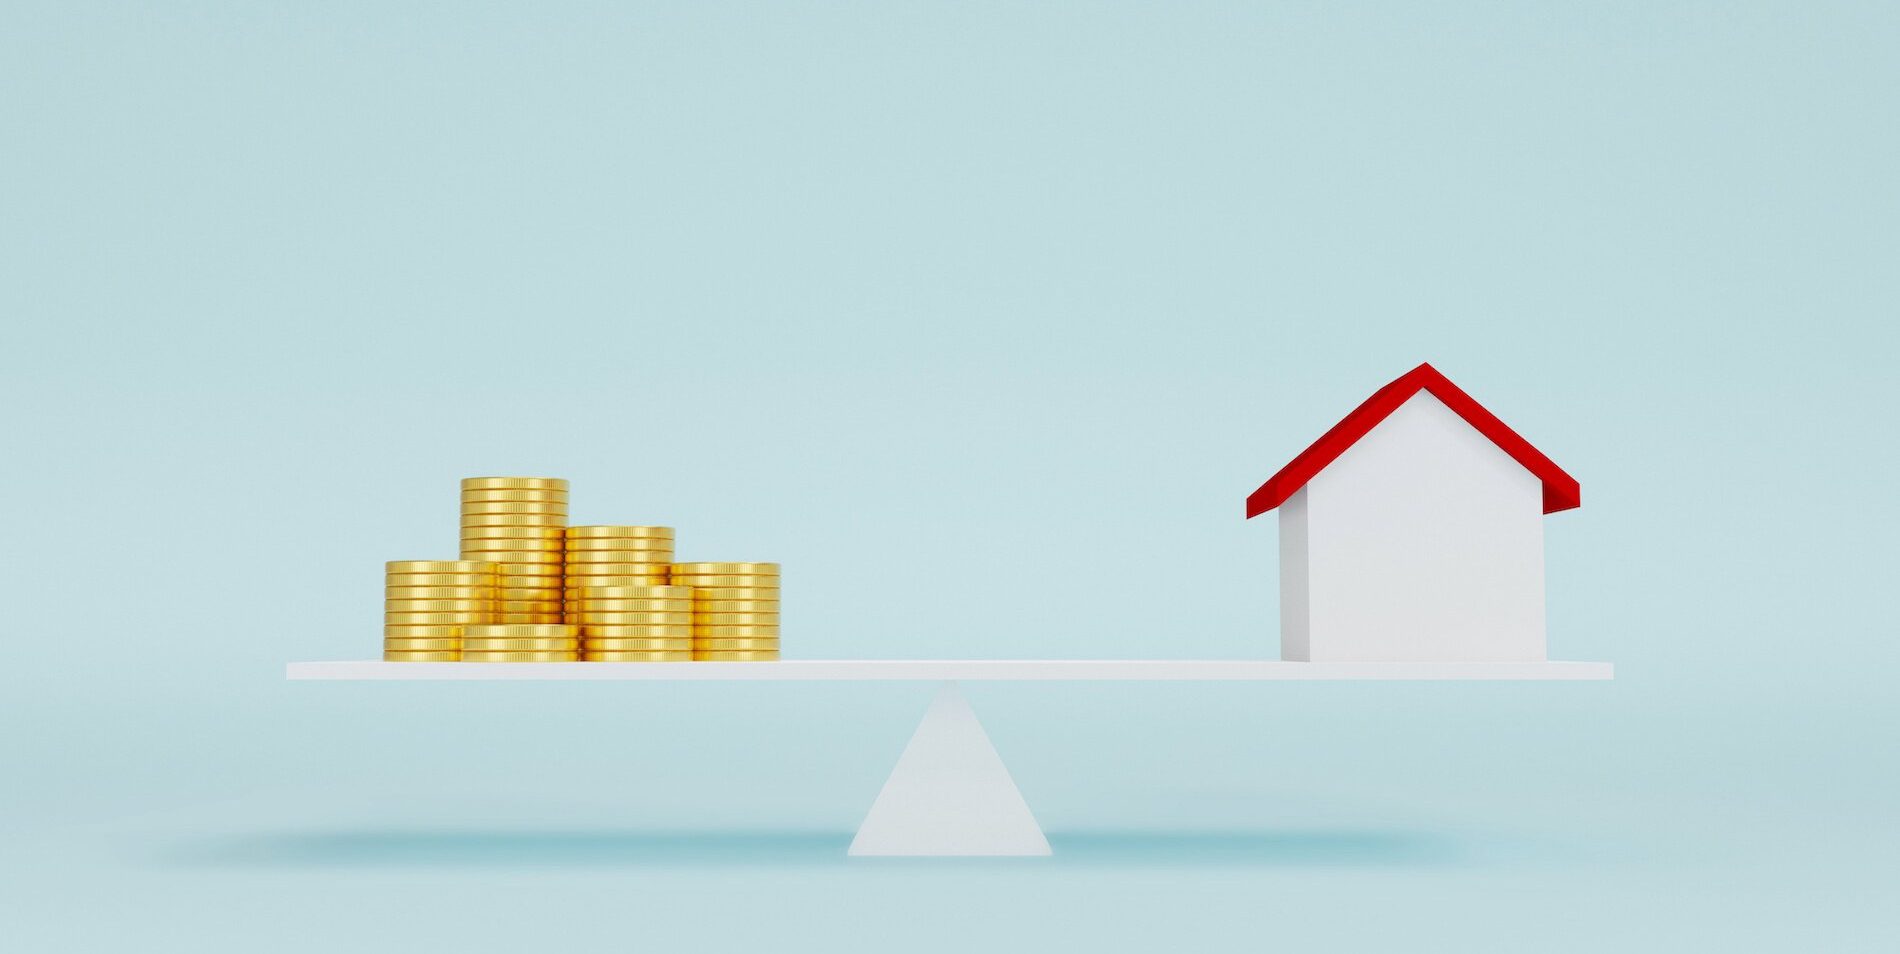 Balancing home financing